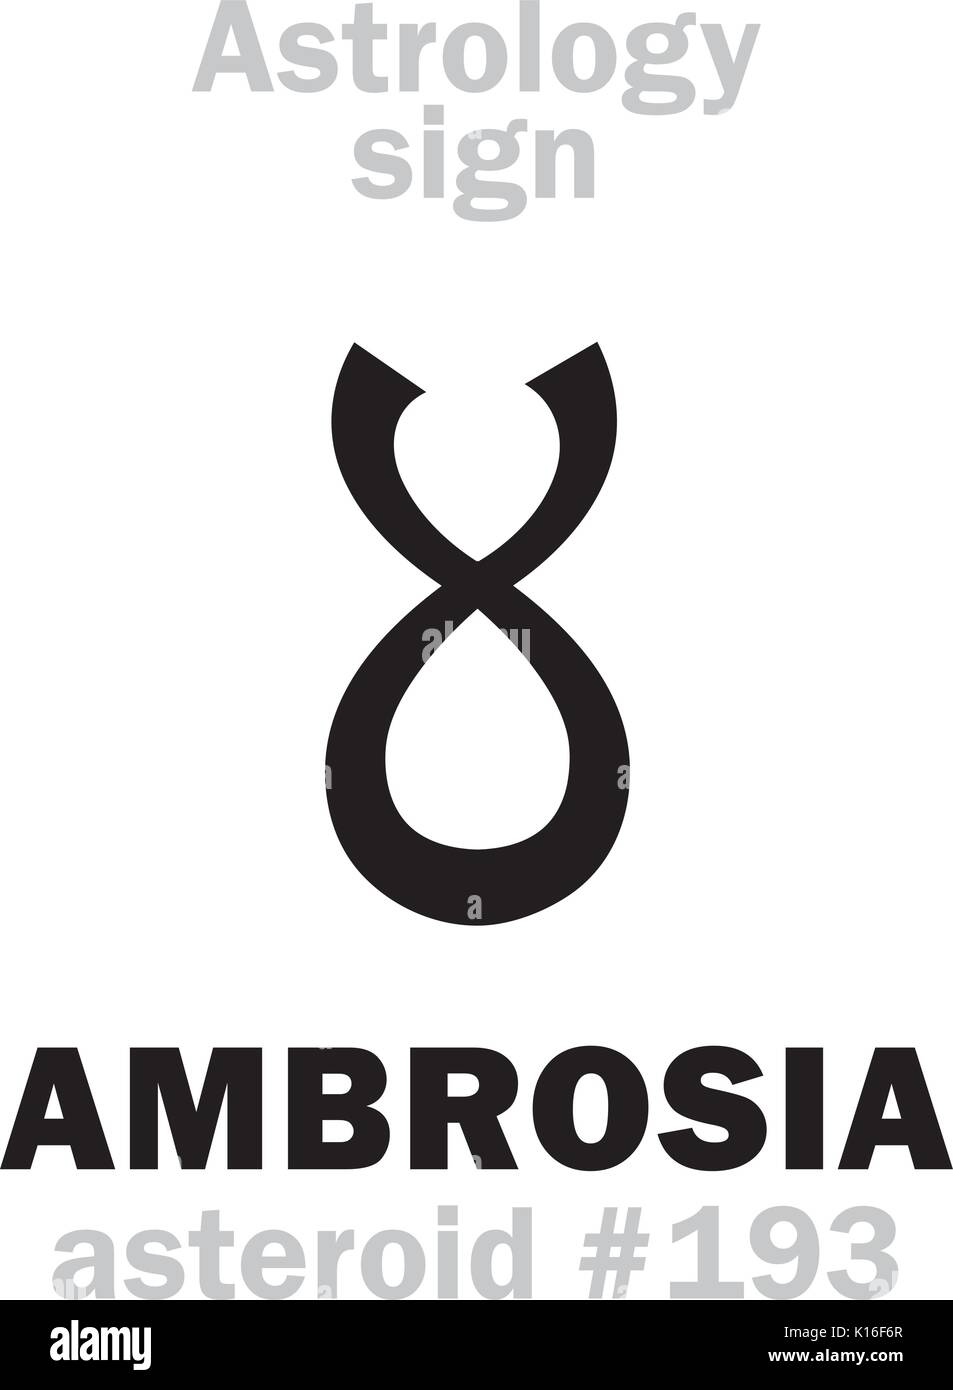 Alfabeto astrologia: AMBROSIA, asteroide #193. Caratteri geroglifici segno (simbolo unico). Illustrazione Vettoriale